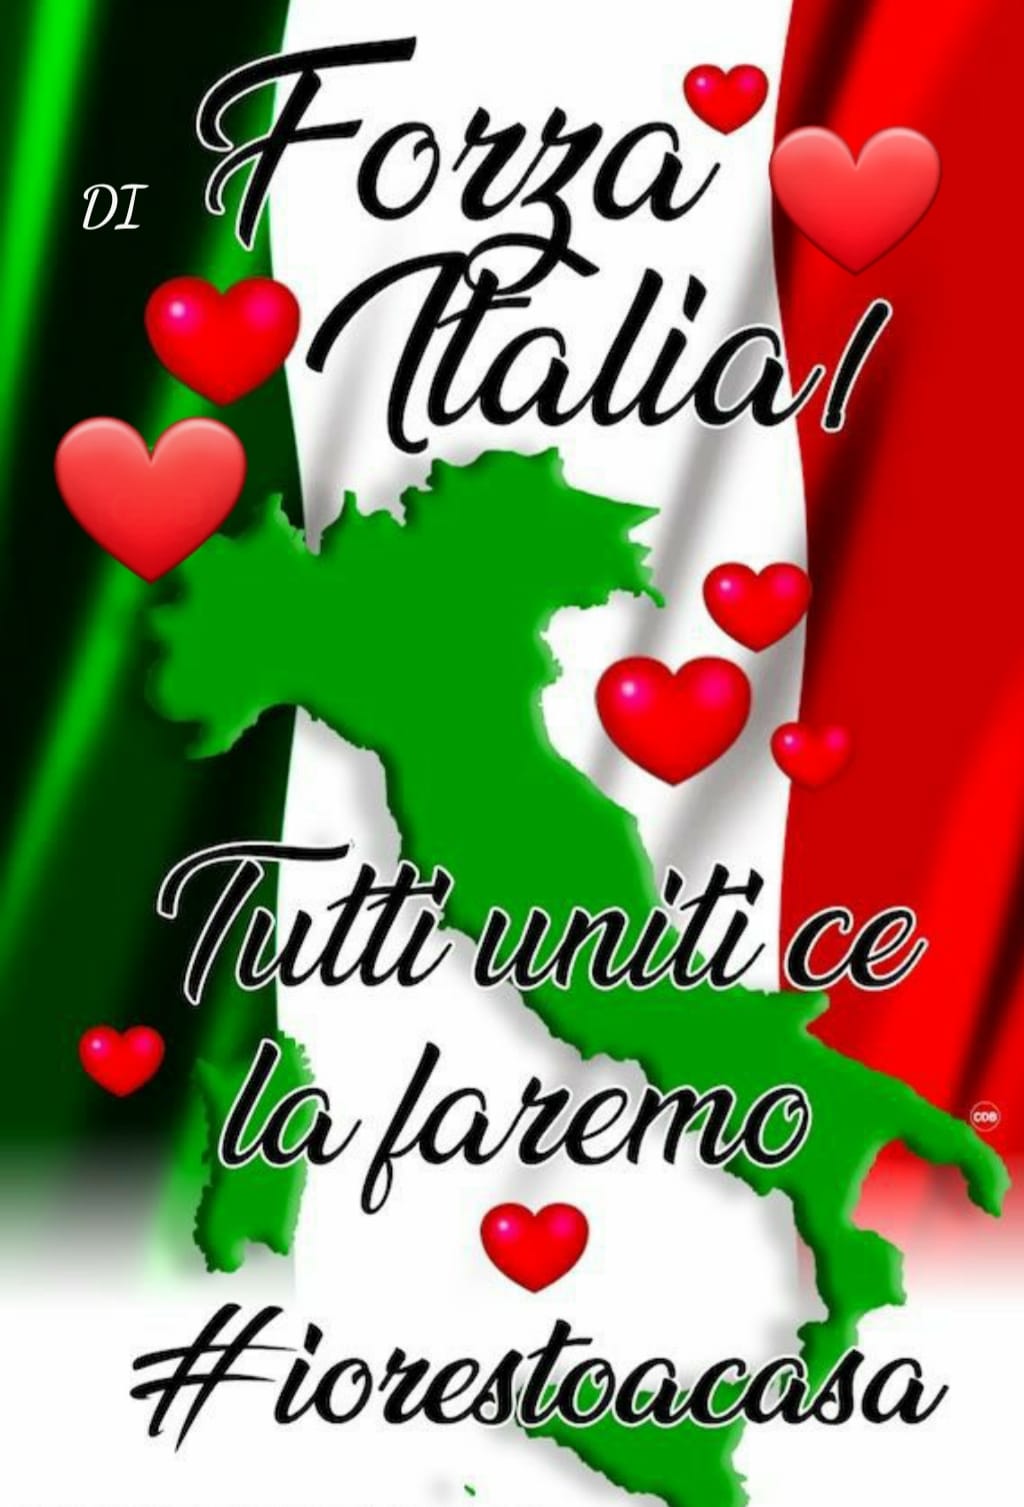 Forza Italia! Tutti uniti ce la faremo! #IoRestoACasa